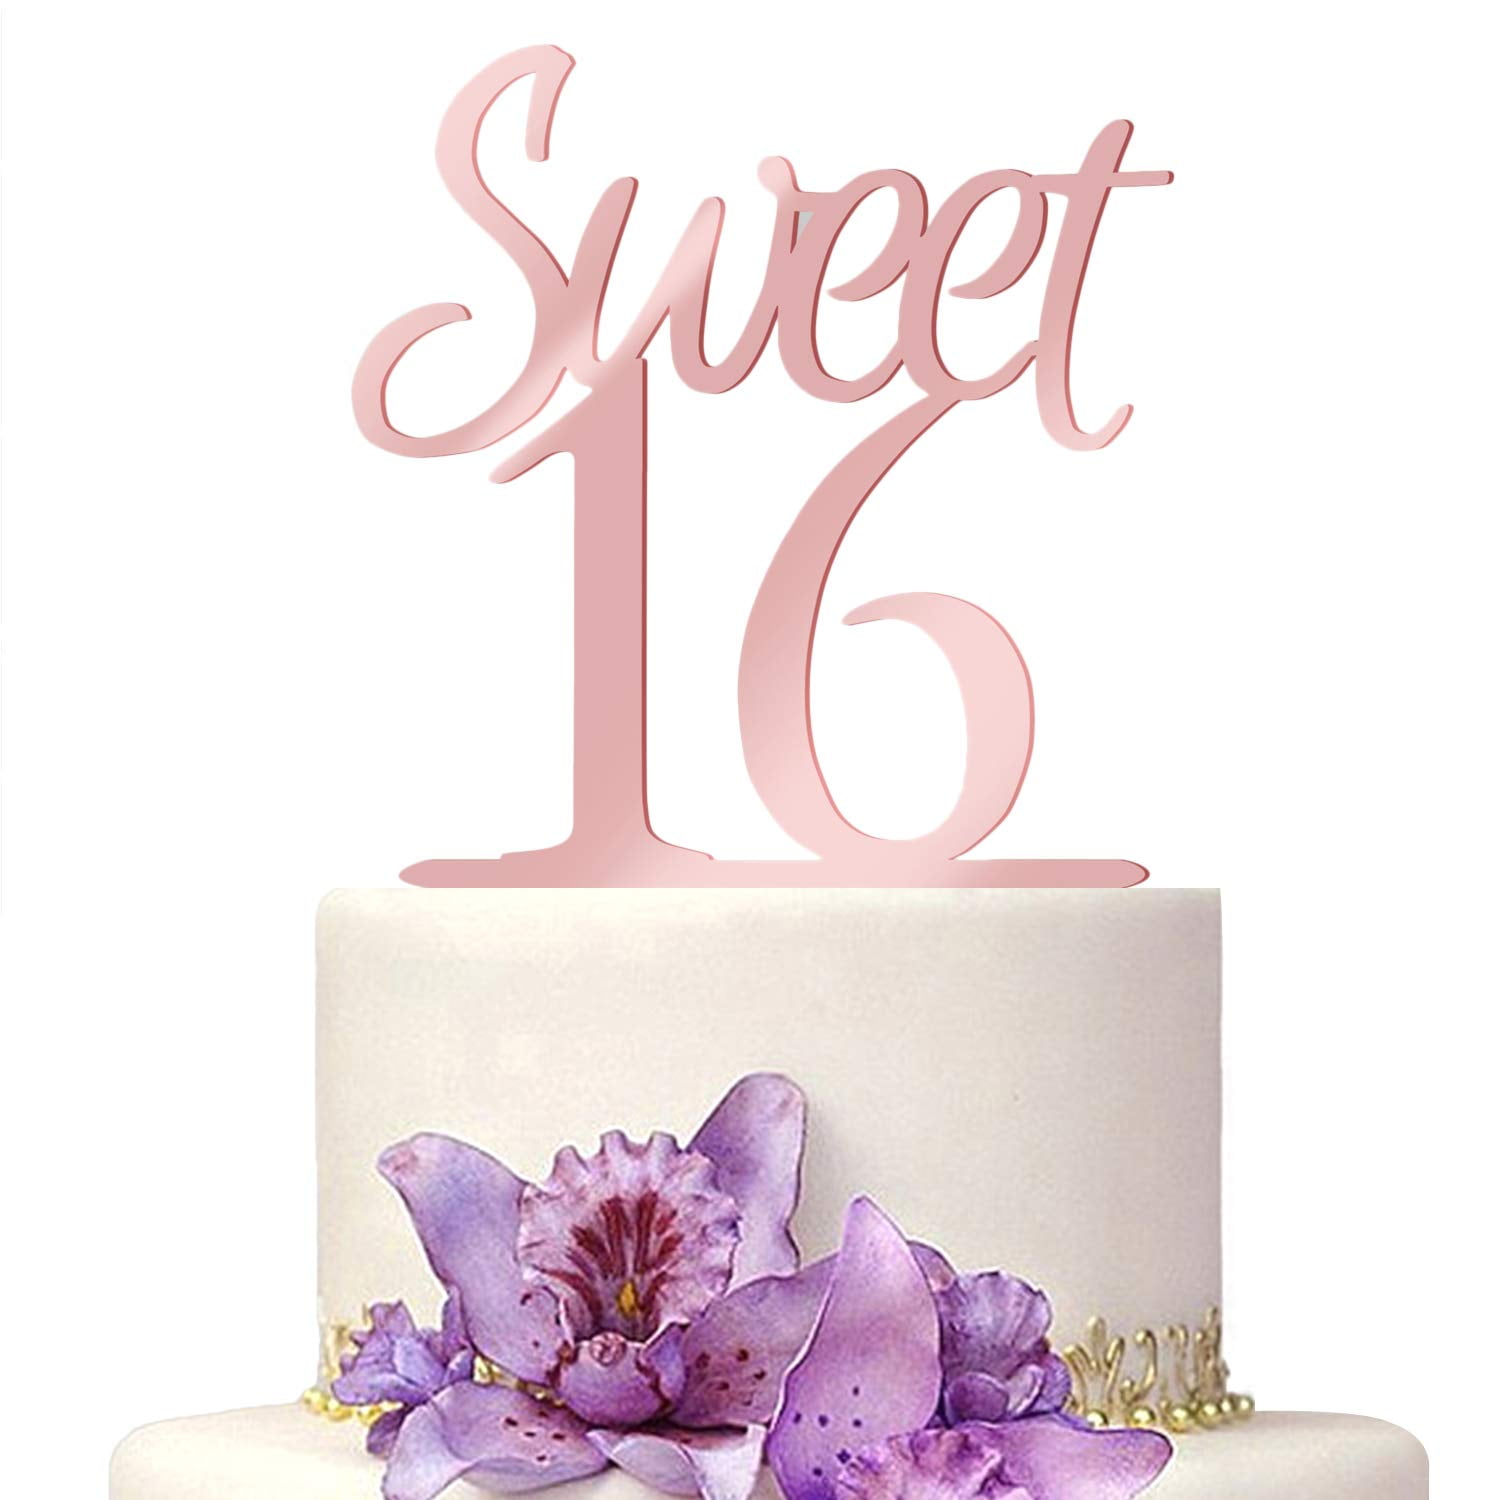 sweet16 cake topper